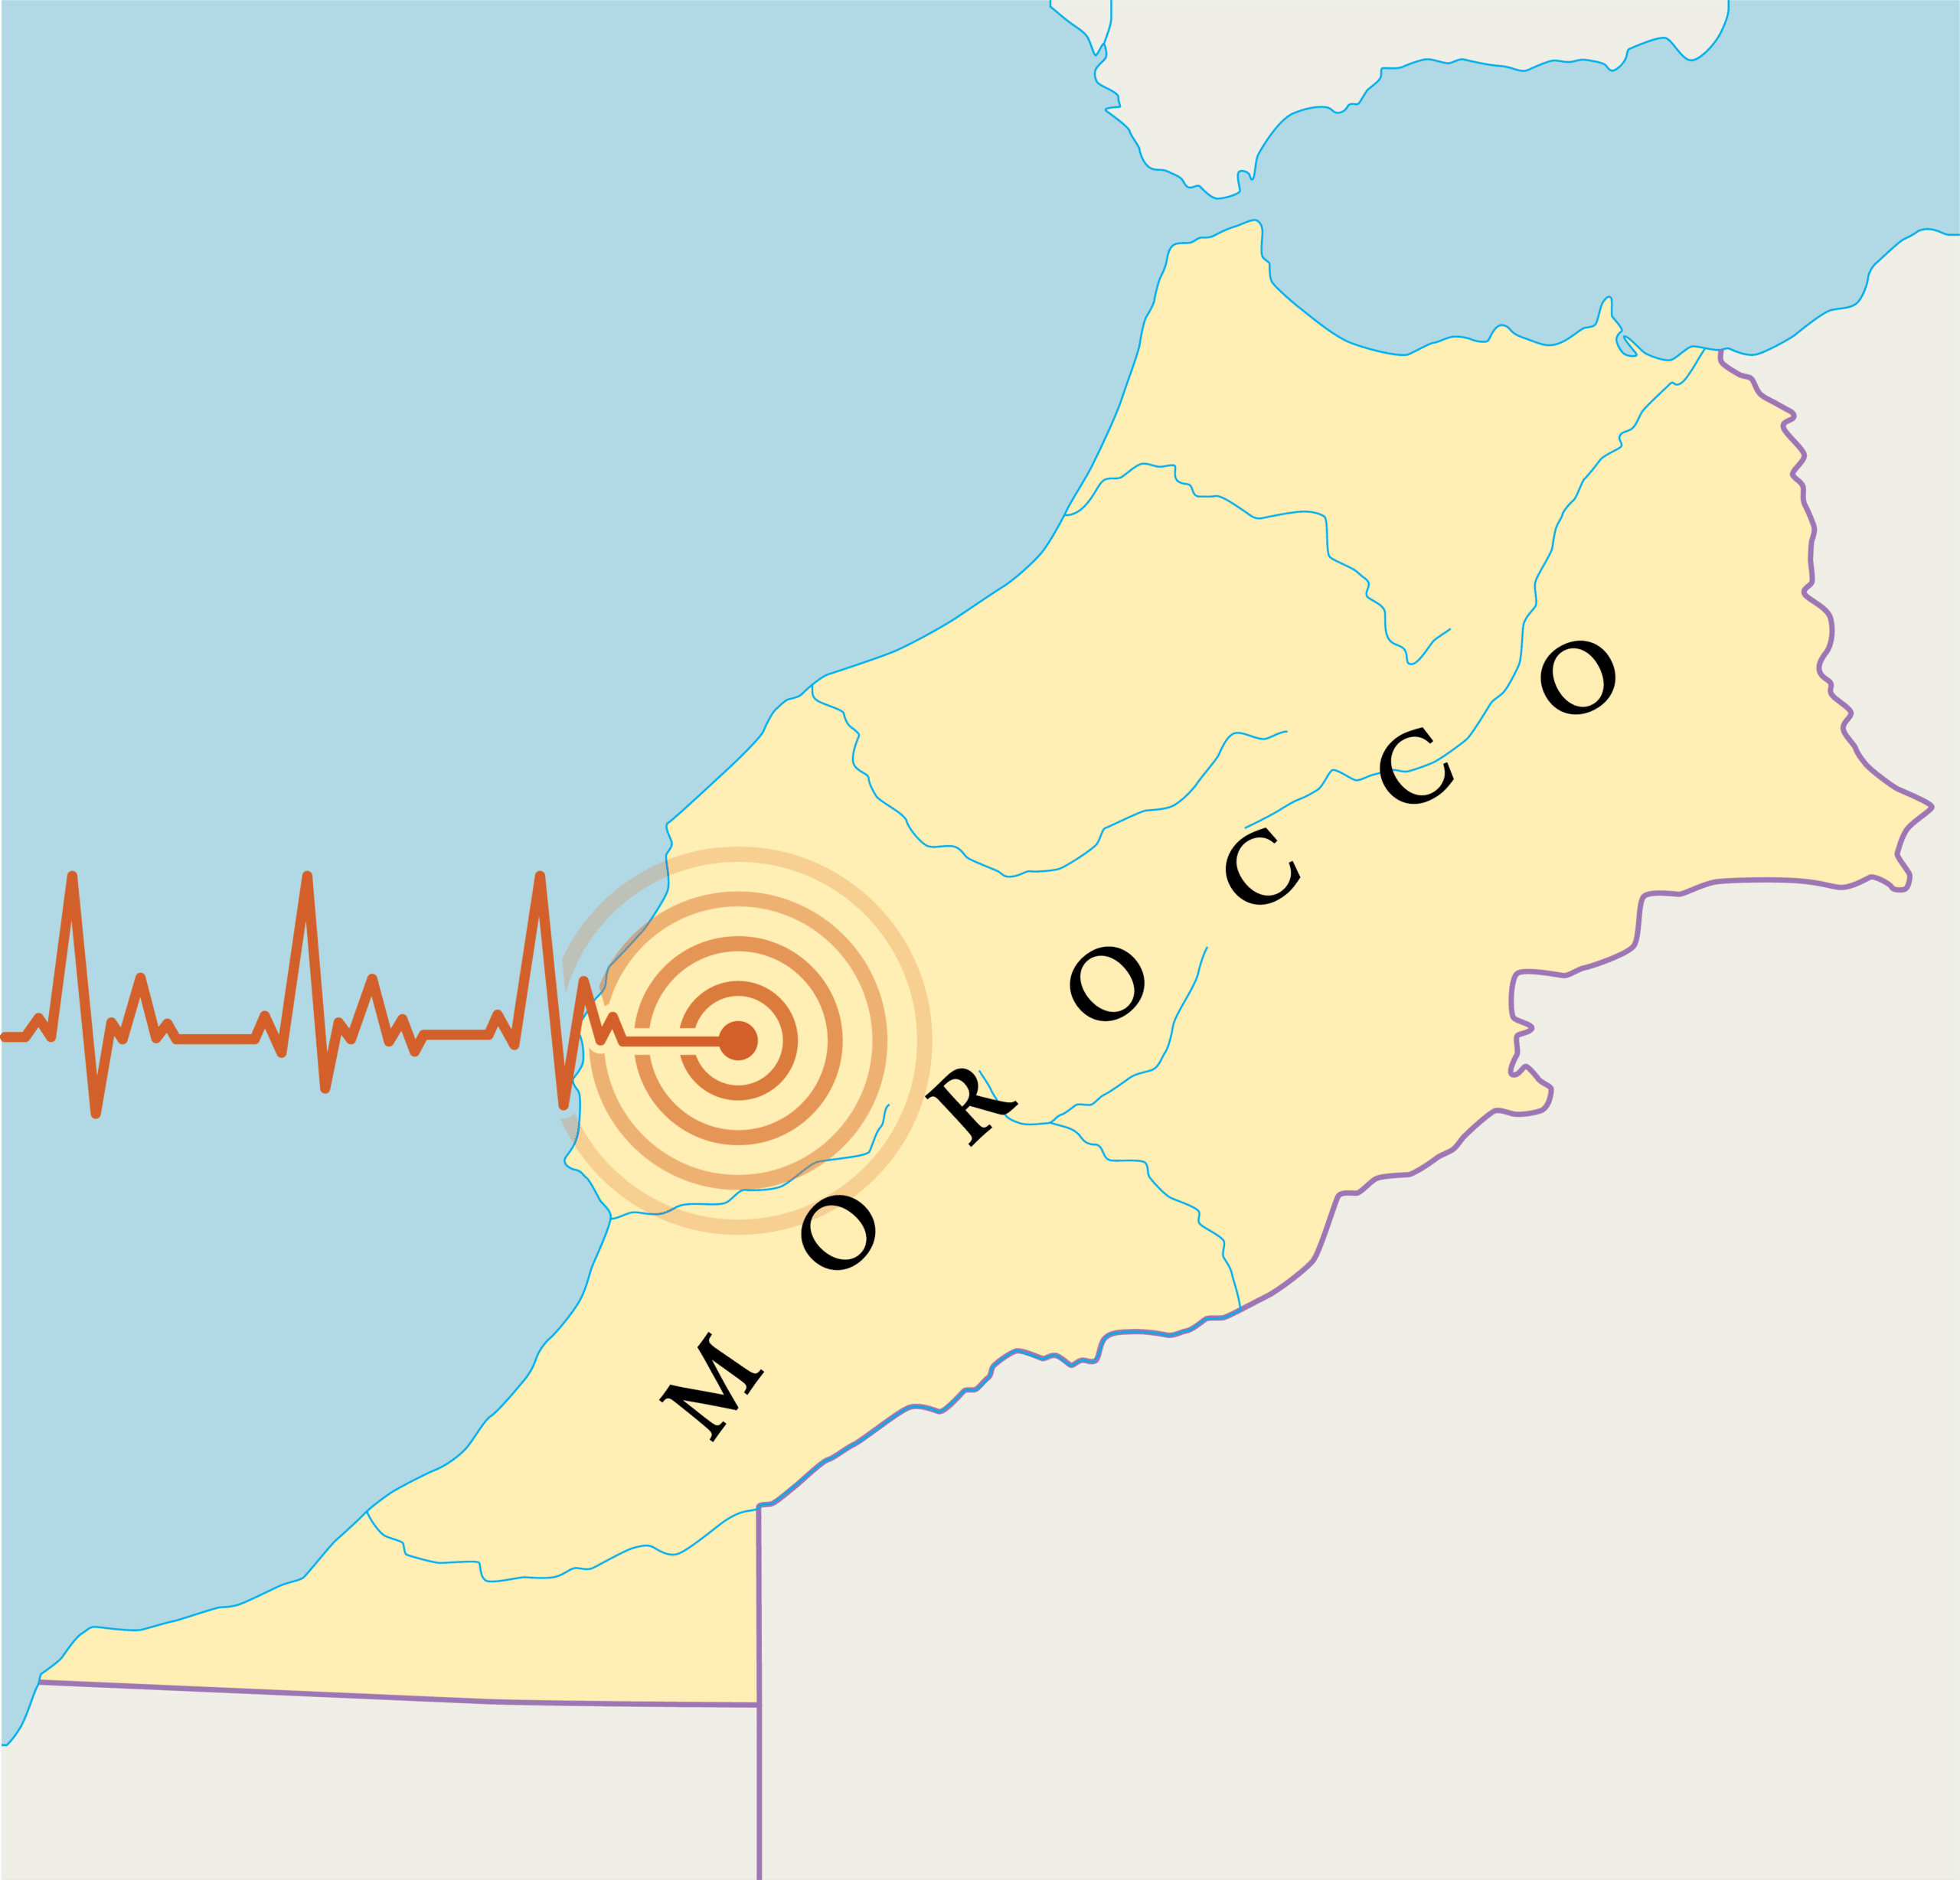 Morocco Earthquake Map Image 